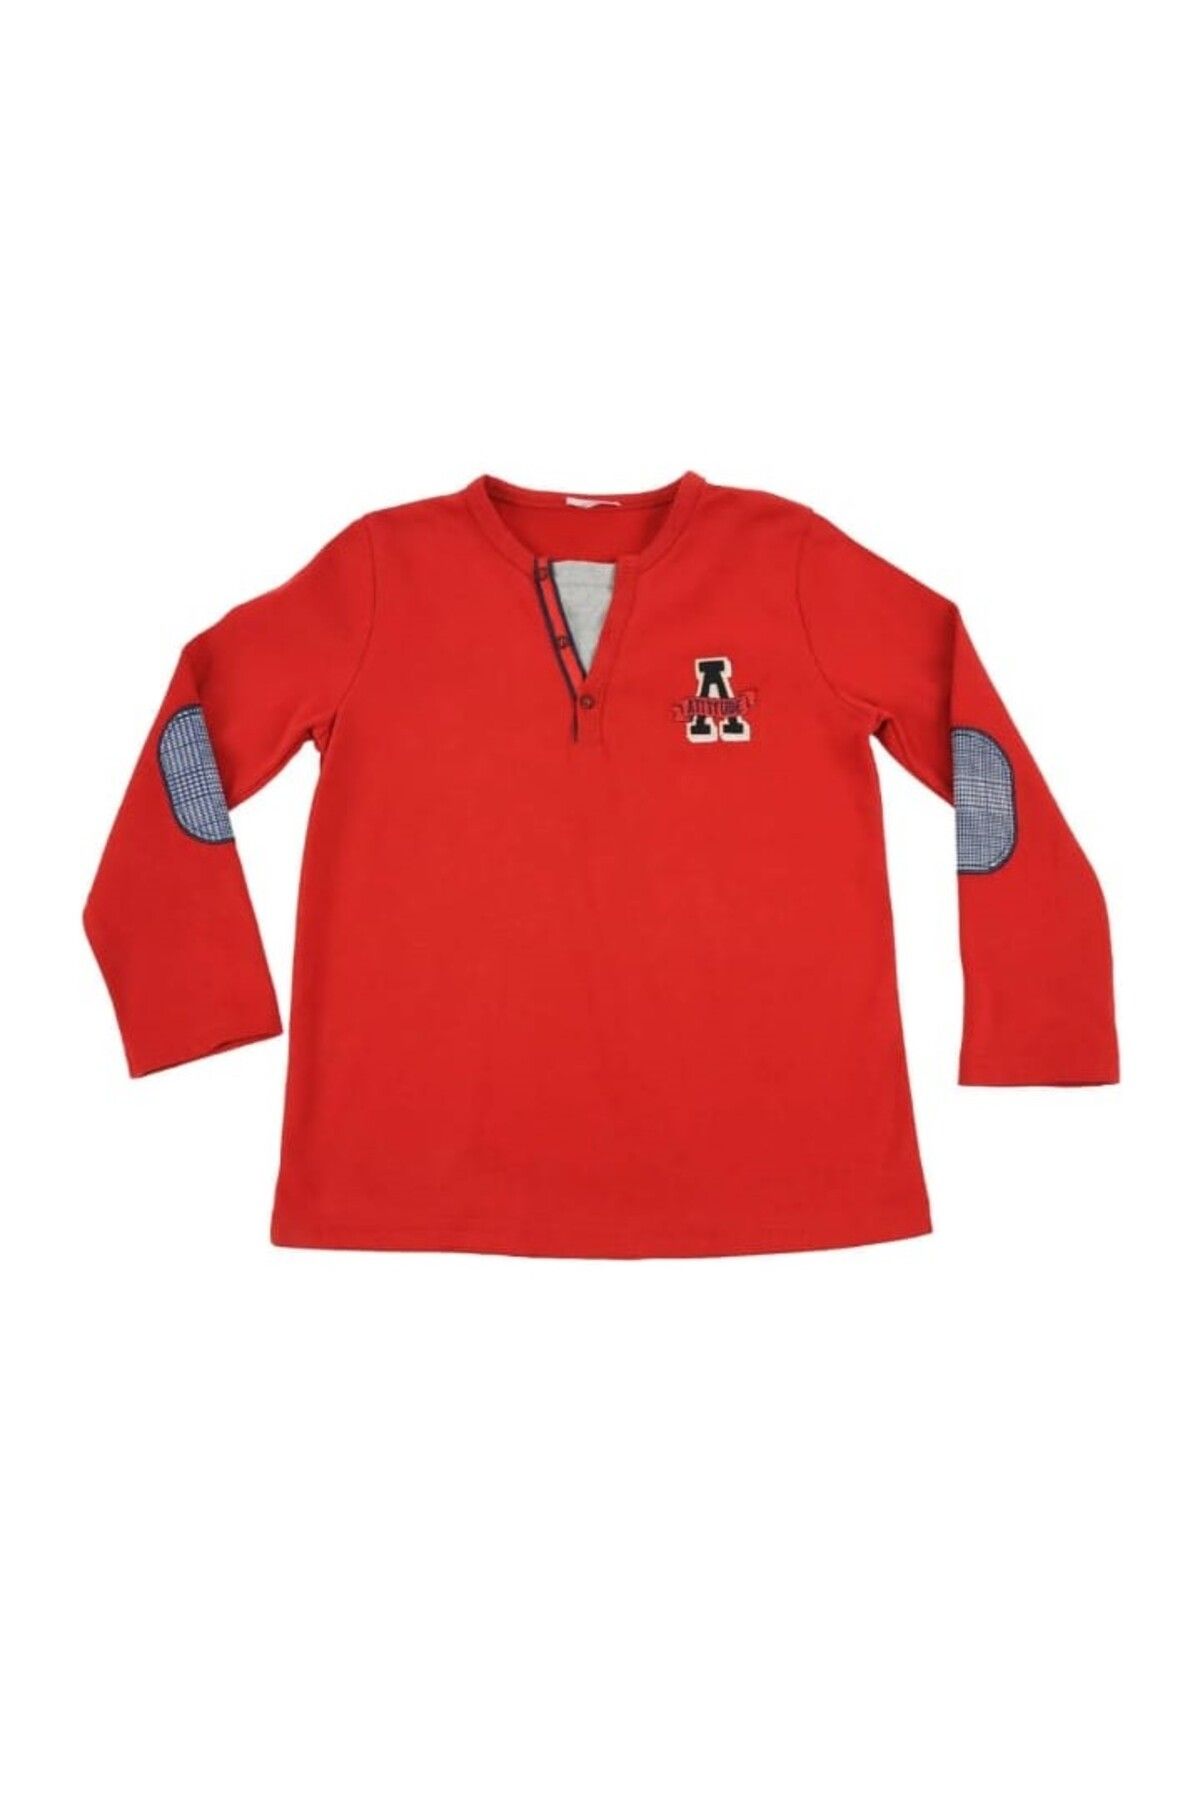 Zeyland Küçük Erkek Çocuk Bebek %100 Pamuk Cotton Kırmızı Renk Sweatshirt 82m1mst65